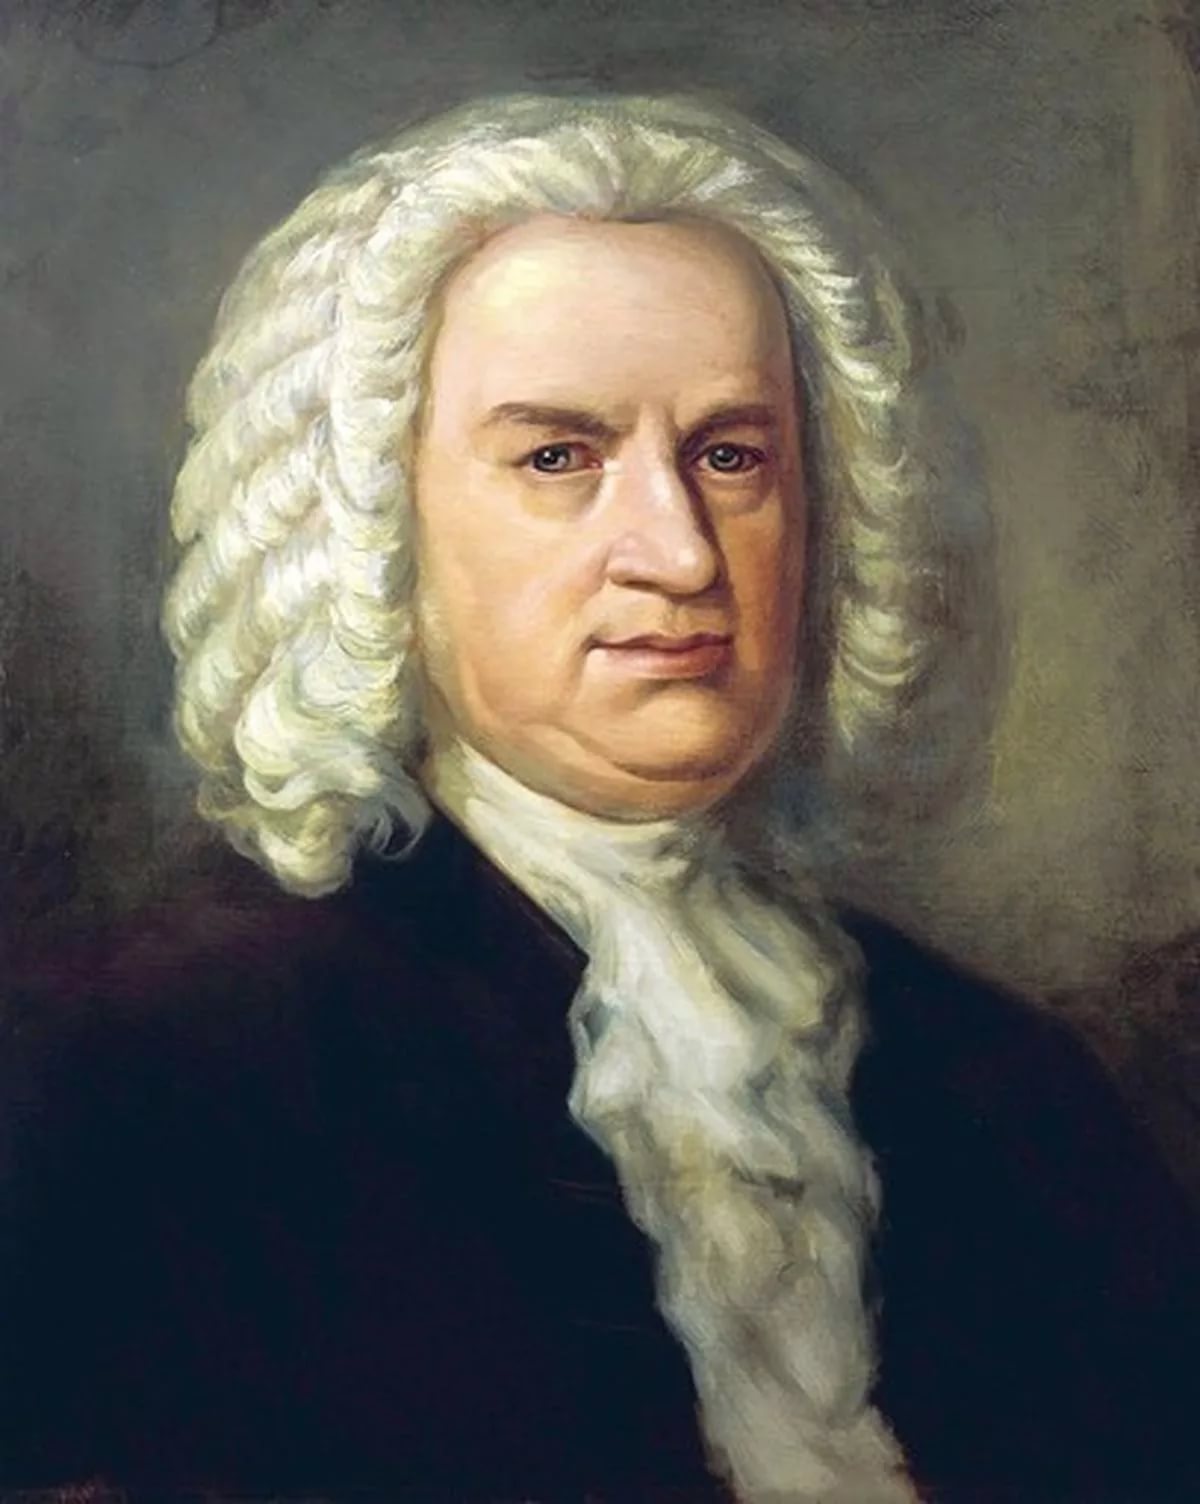 Иоганн Себастьян Бах (1685-1750)